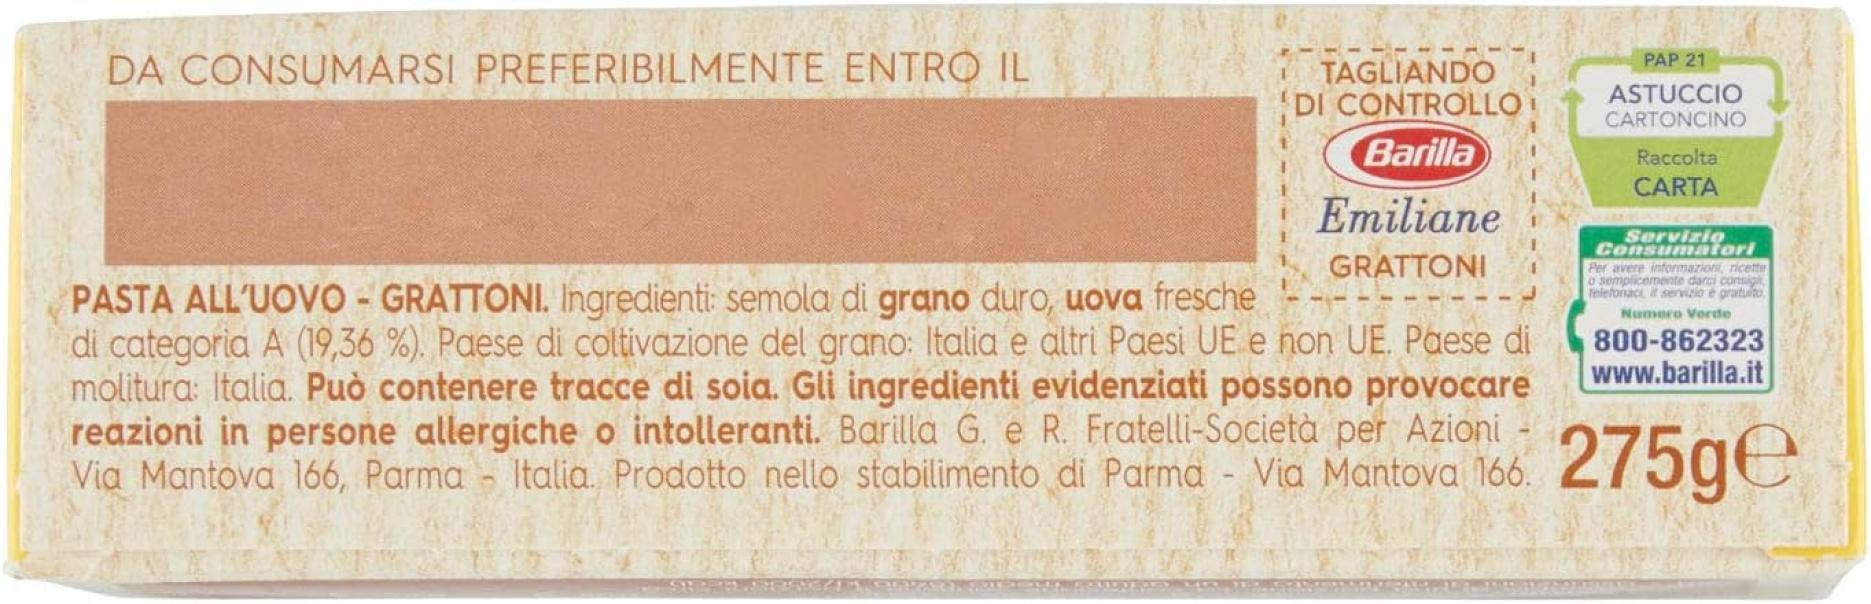 pasta-emiliane-grattoni-barilla-275gr-5